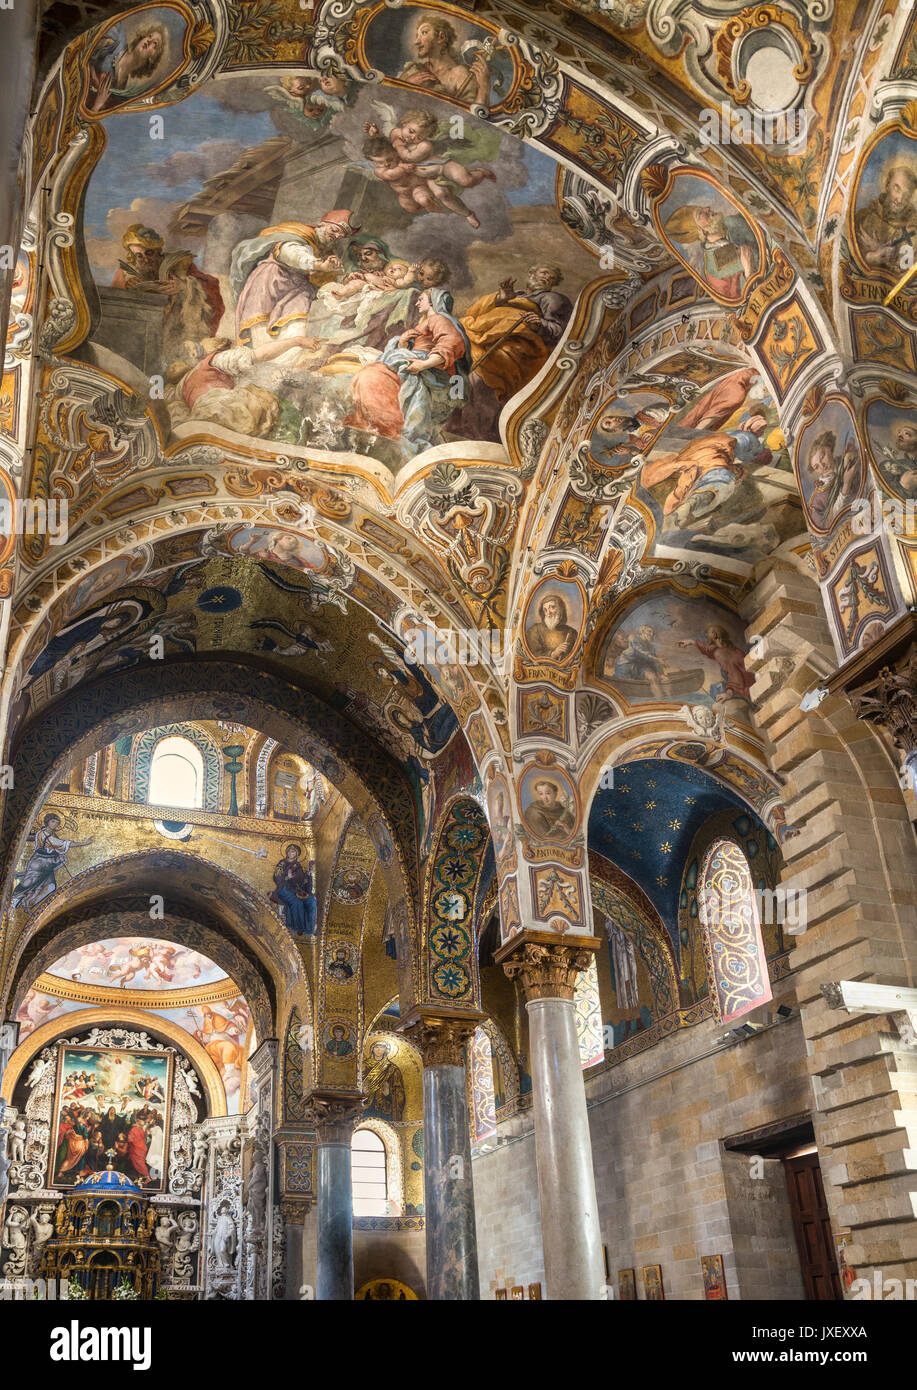 Interior view of Santa Maria dell' Ammiraglio, La Martorana, church in the Piazza Bellini, Central Palermo. Stock Photo